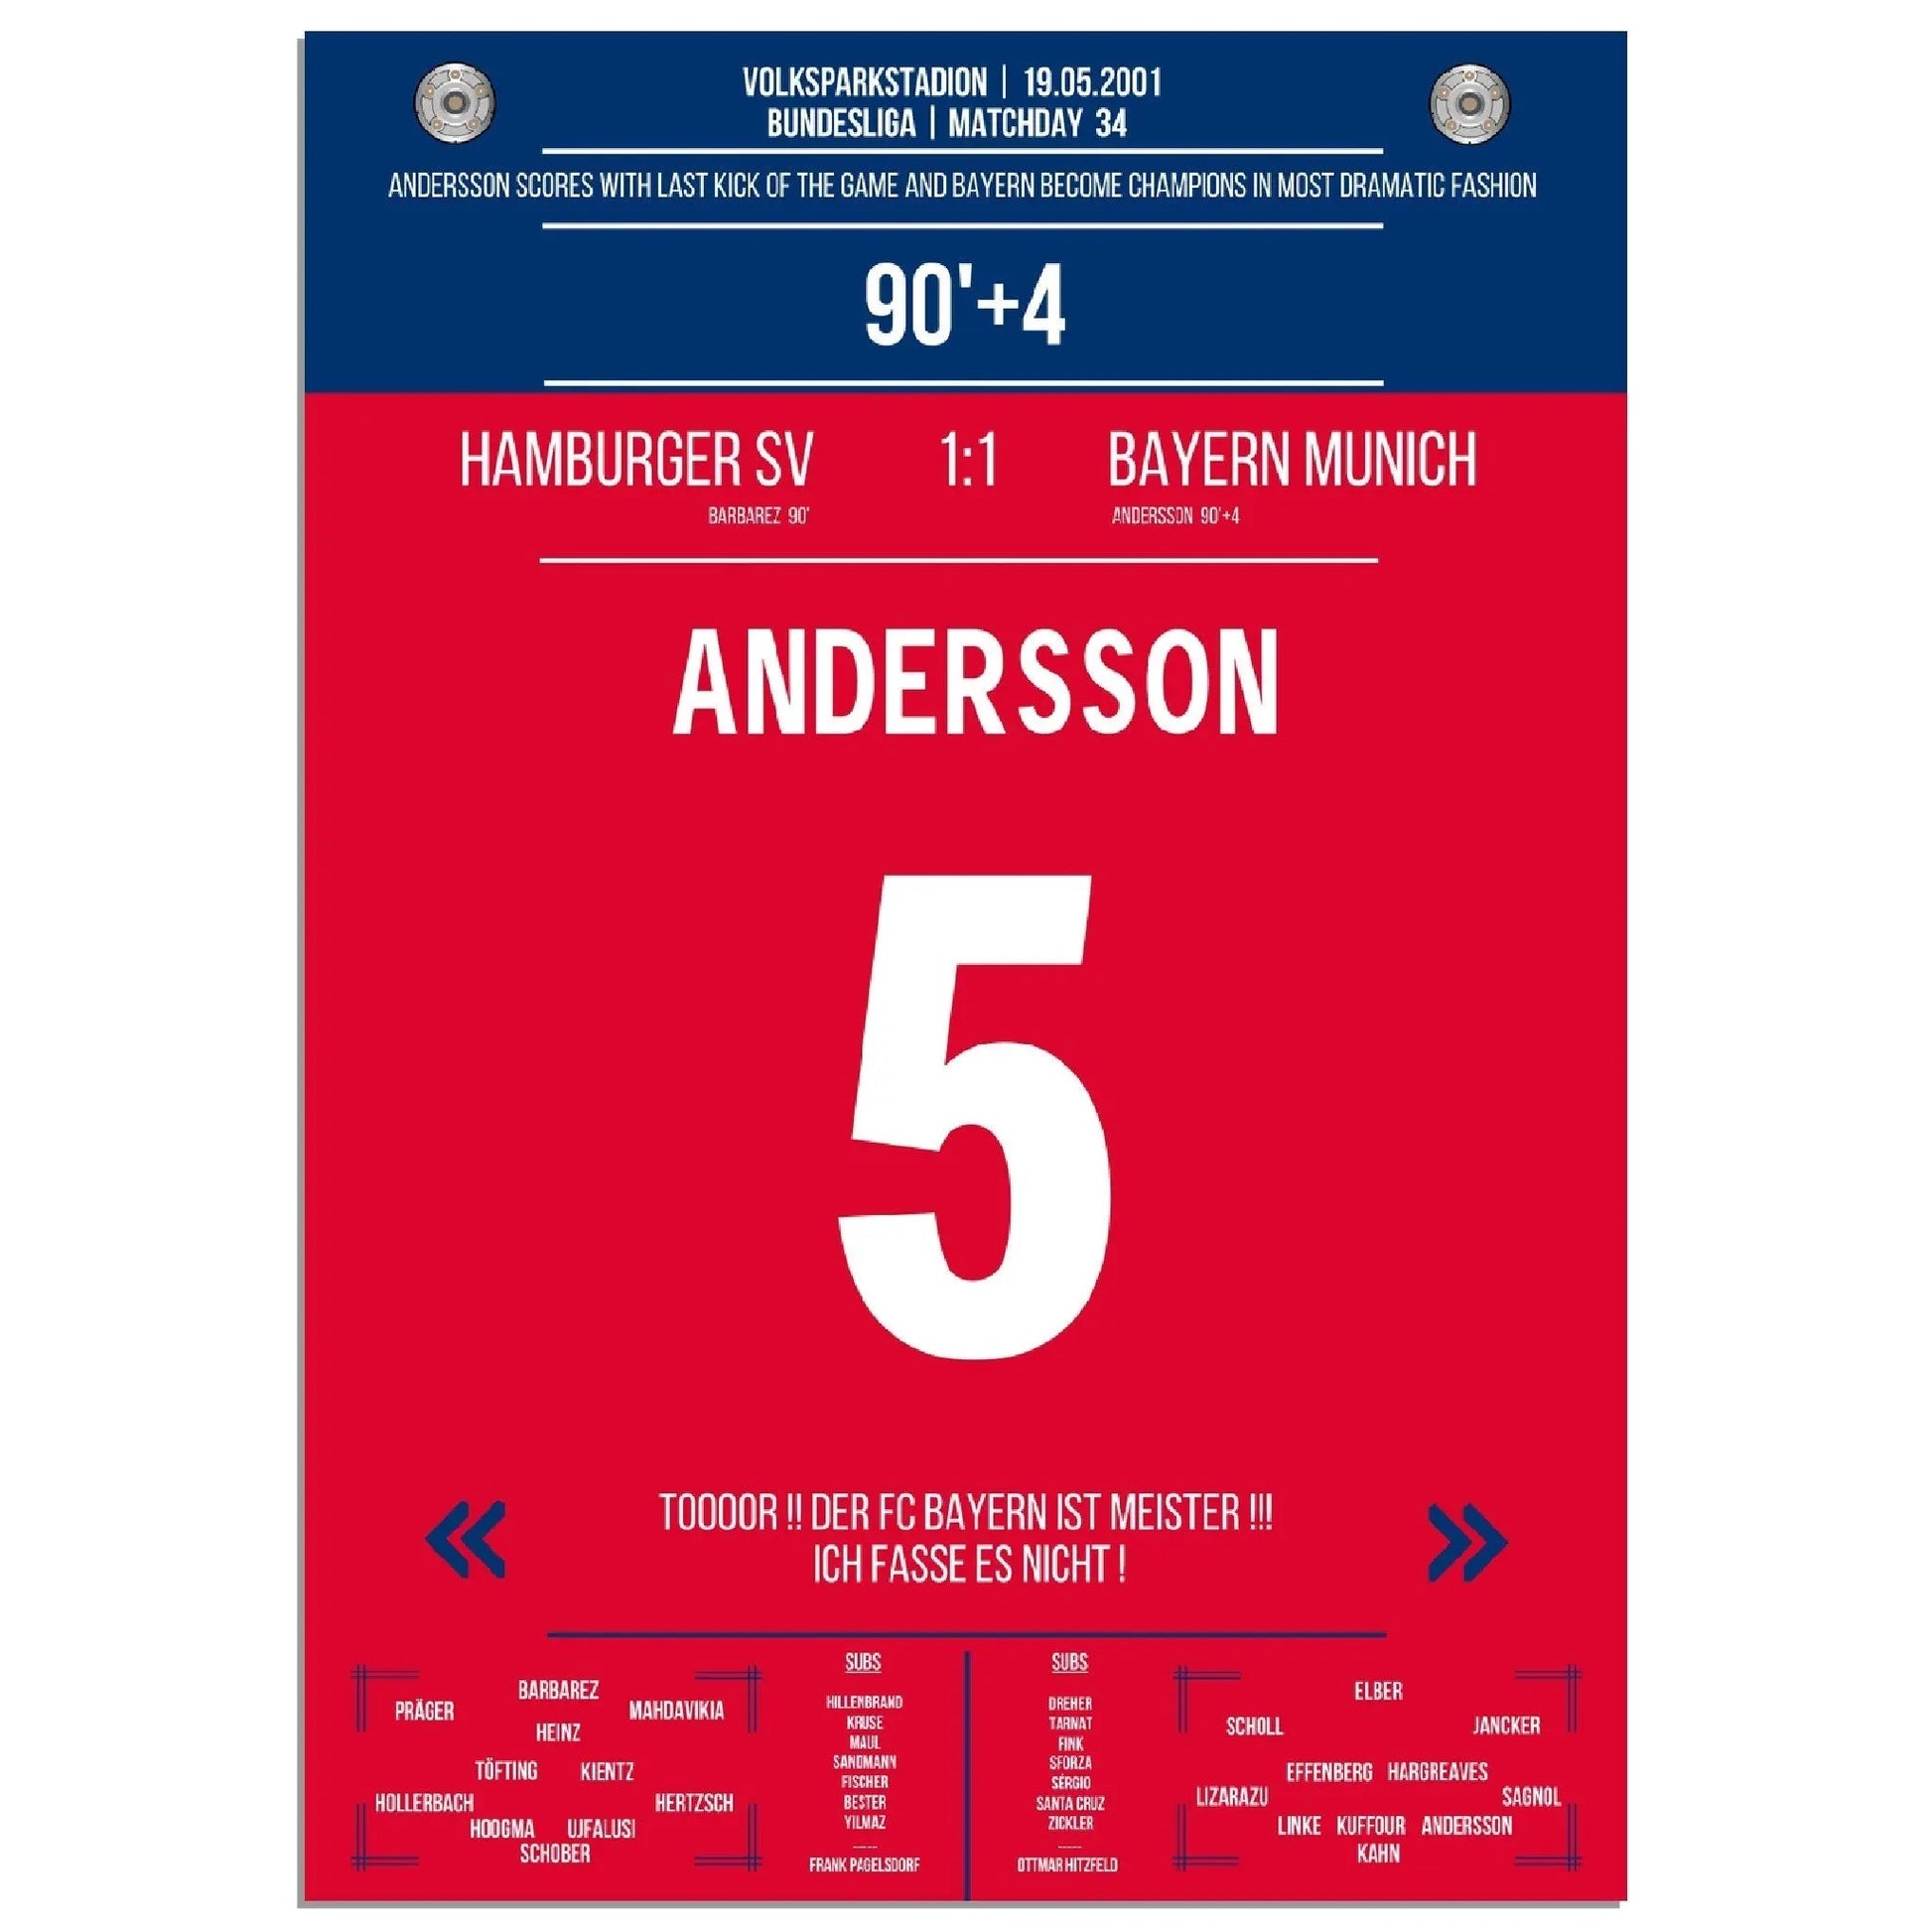 Anderssons legendärer Freistosstreffer zur Last-Minute Meisterschaft 2001 